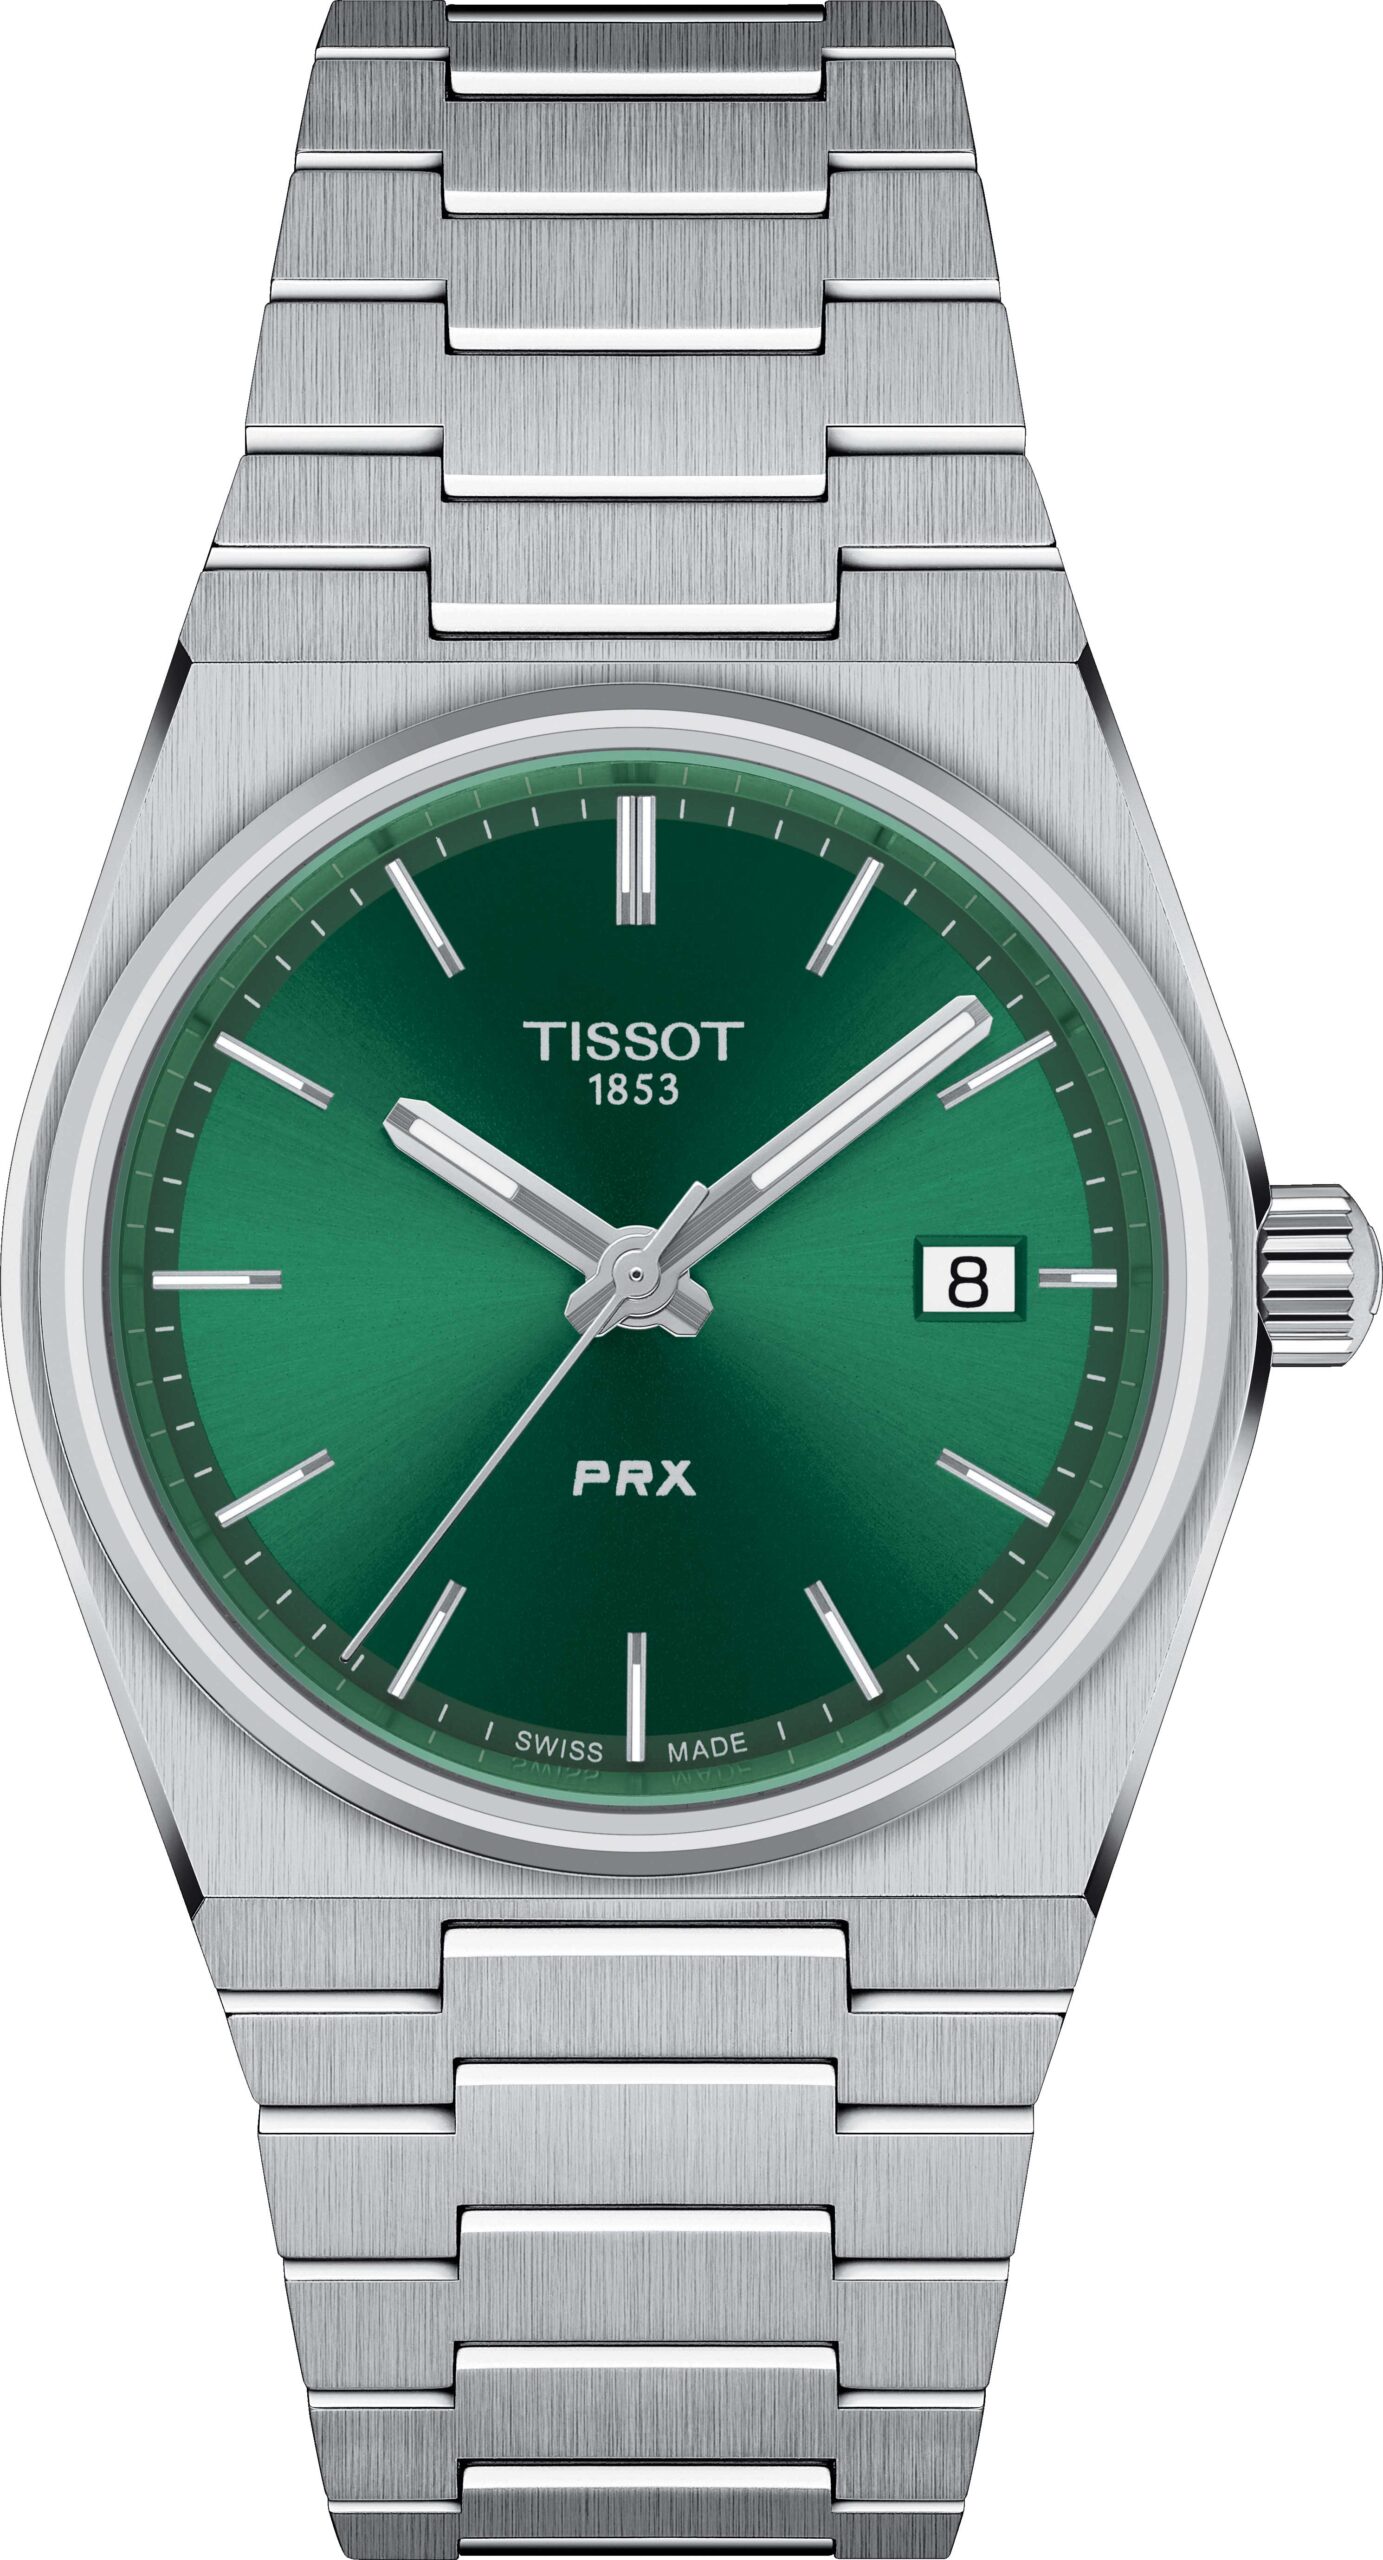 PRX: Tissot amplió su popular línea con nueve nuevos modelos